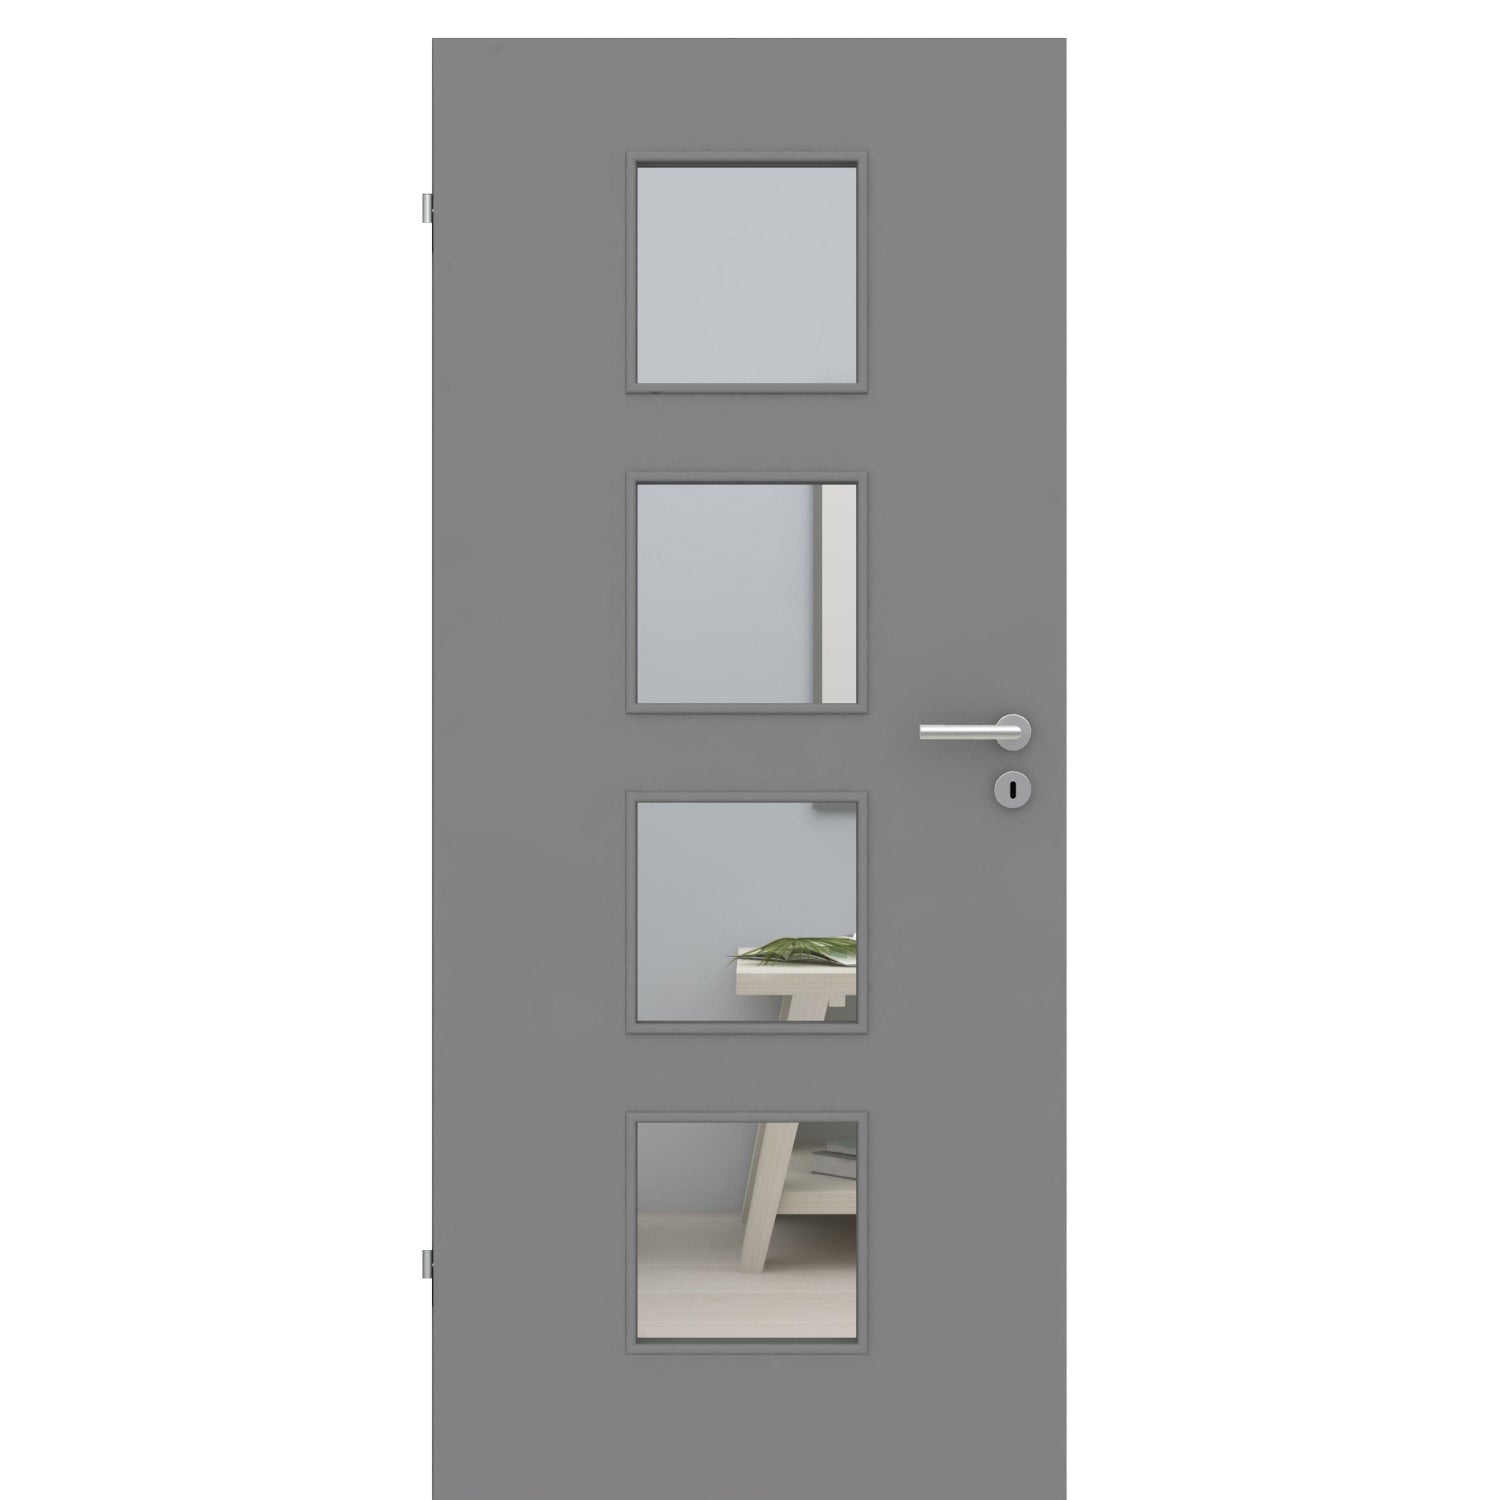 Zimmertür mit Lichtausschnitt grau glatt Designkante - Modell LA4